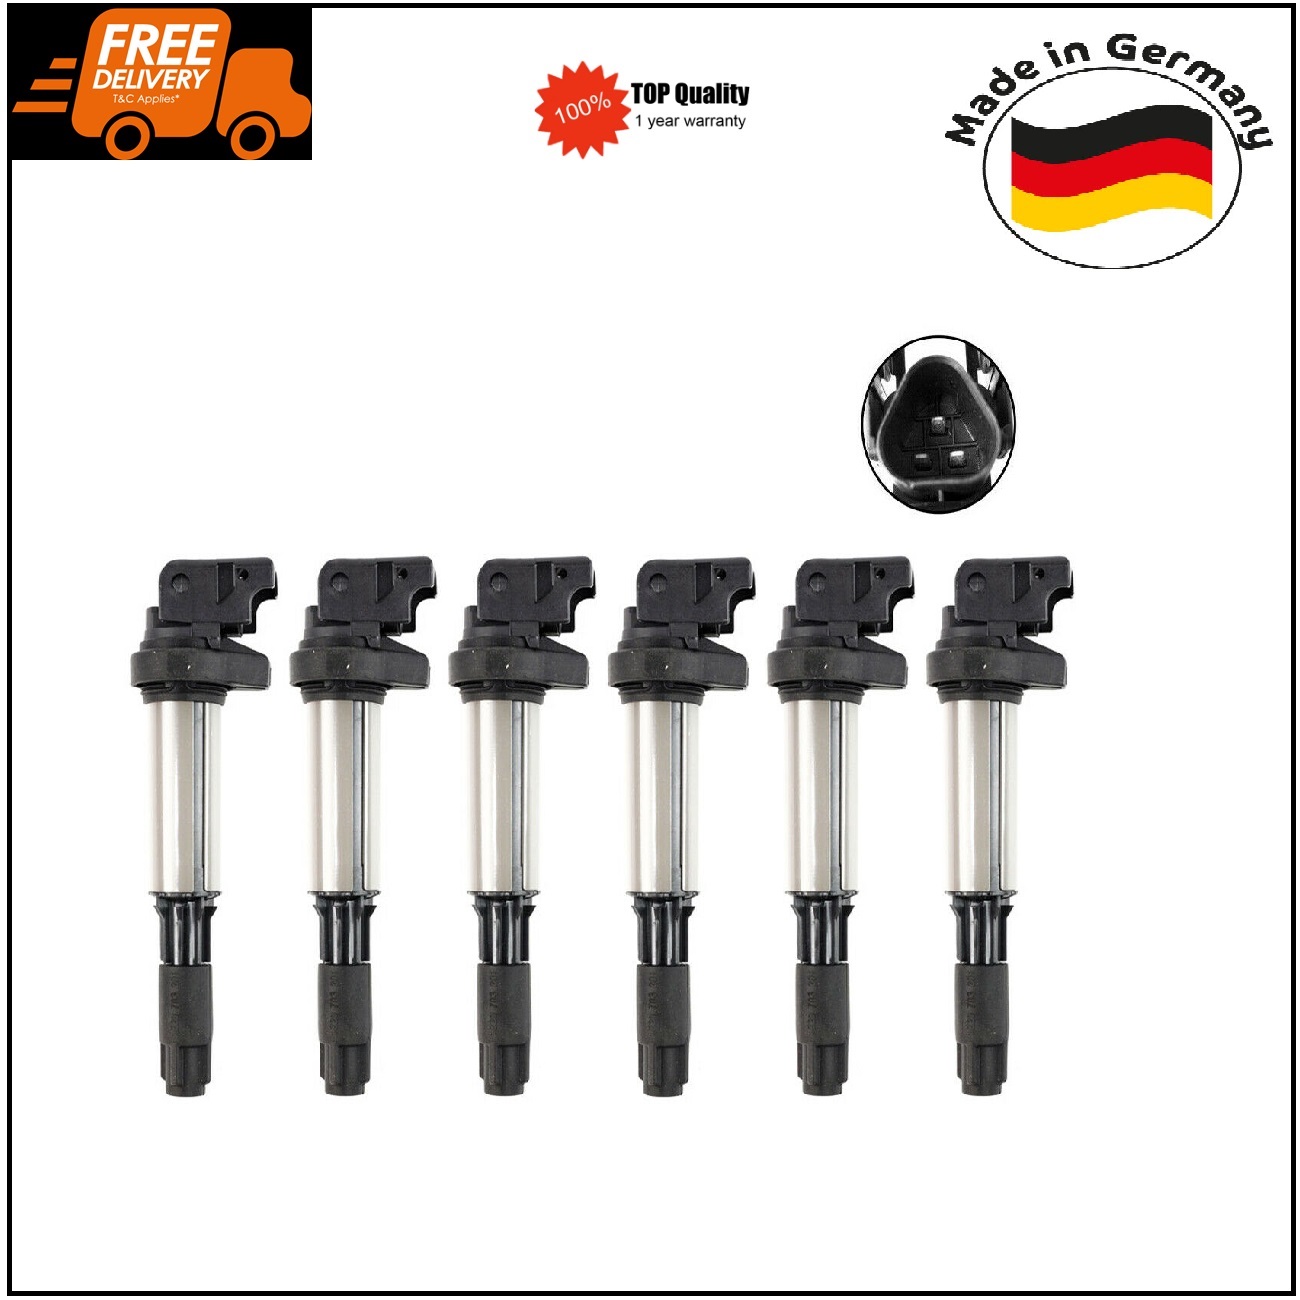 6Pcs Ignition Coils for BMW 1 3 5 Series E46 E91 E92 E93 E39 E63 E83 E53